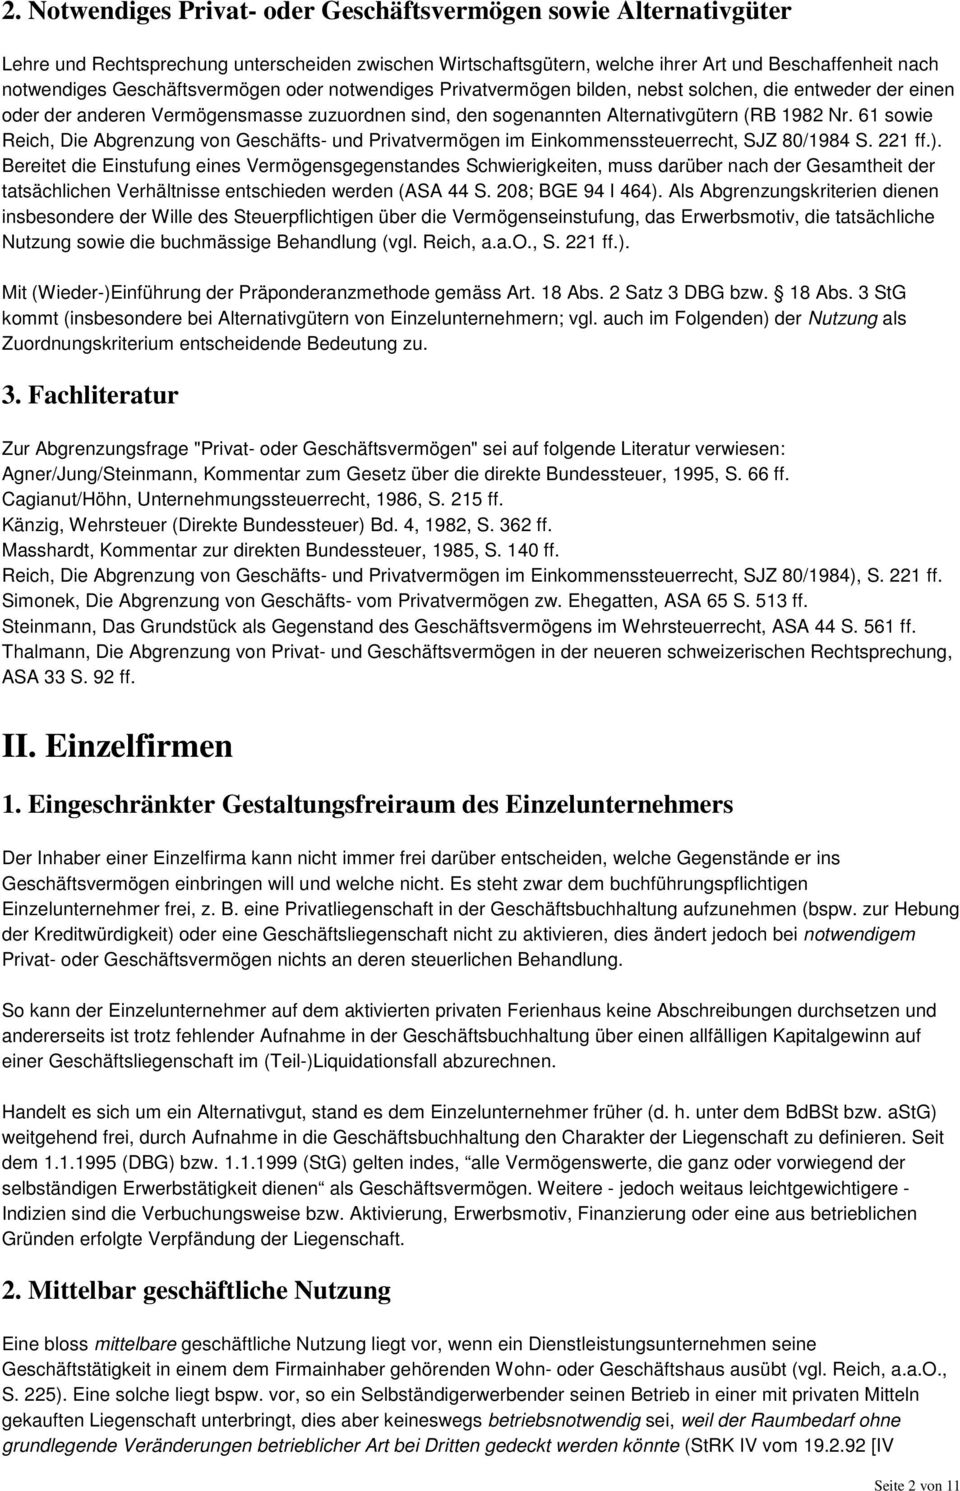 61 sowie Reich, Die Abgrenzung von Geschäfts- und Privatvermögen im Einkommenssteuerrecht, SJZ 80/1984 S. 221 ff.).